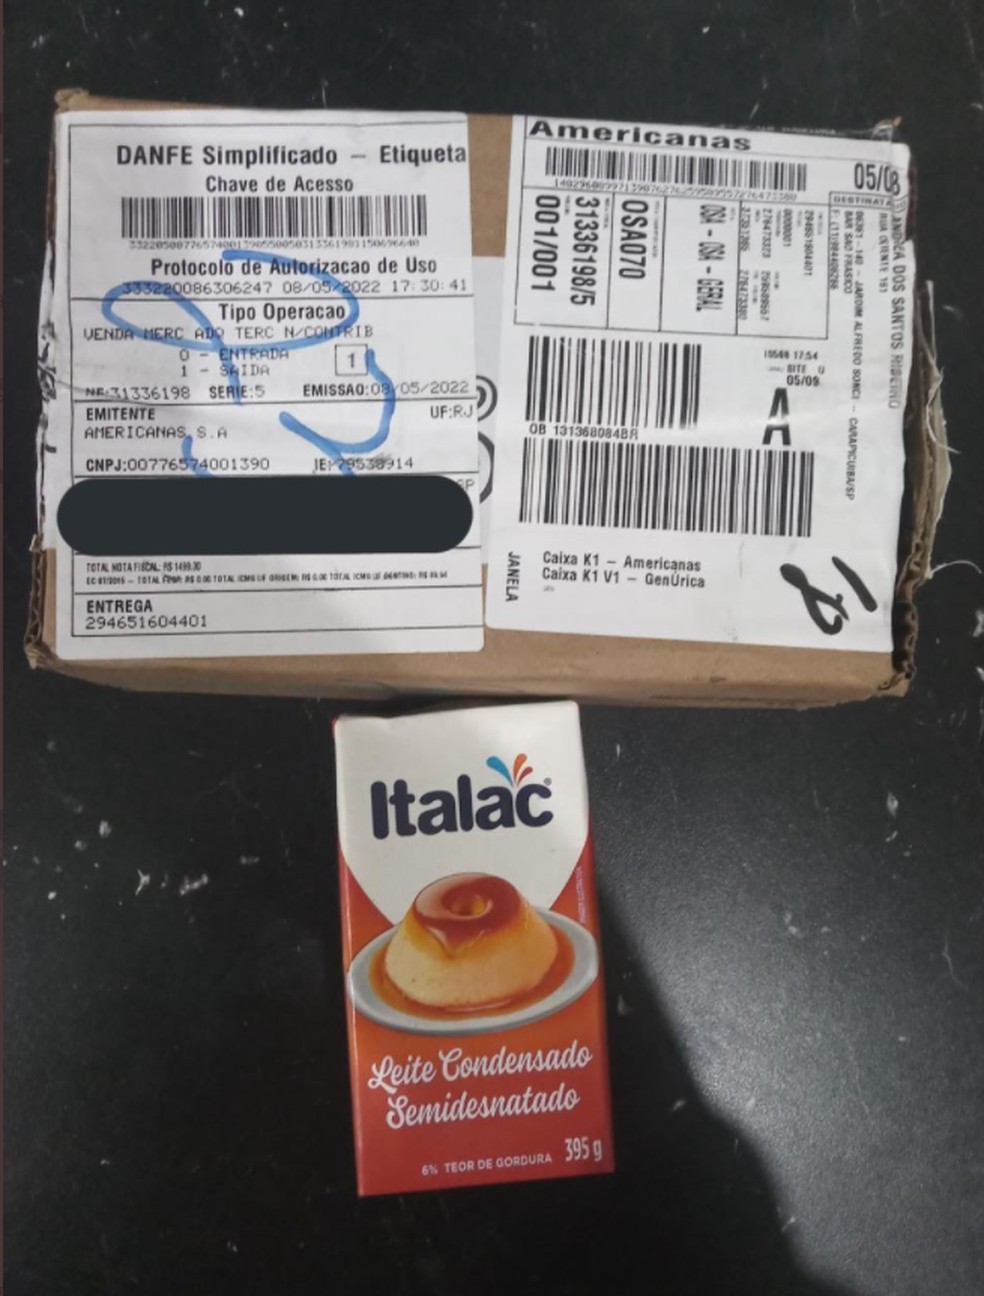 O jovem recebeu uma caixa de leite condensado no lugar do celular — Foto: Reprodução/ Rede Social